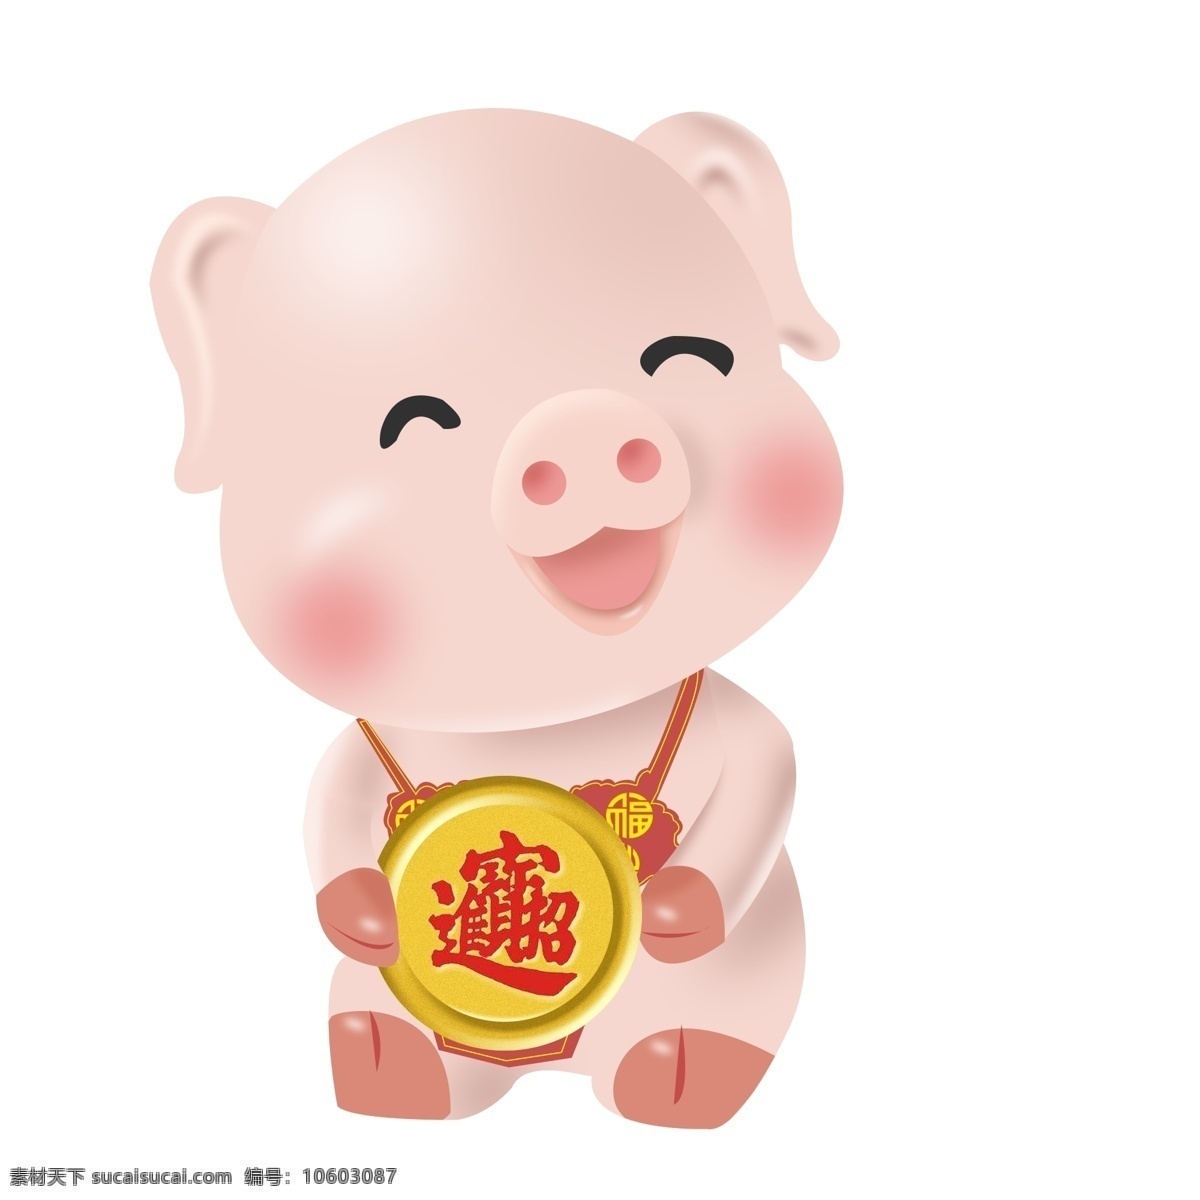 2019 年 猪年 卡通 生肖 粉色 猪 原创 商用 元素 新年